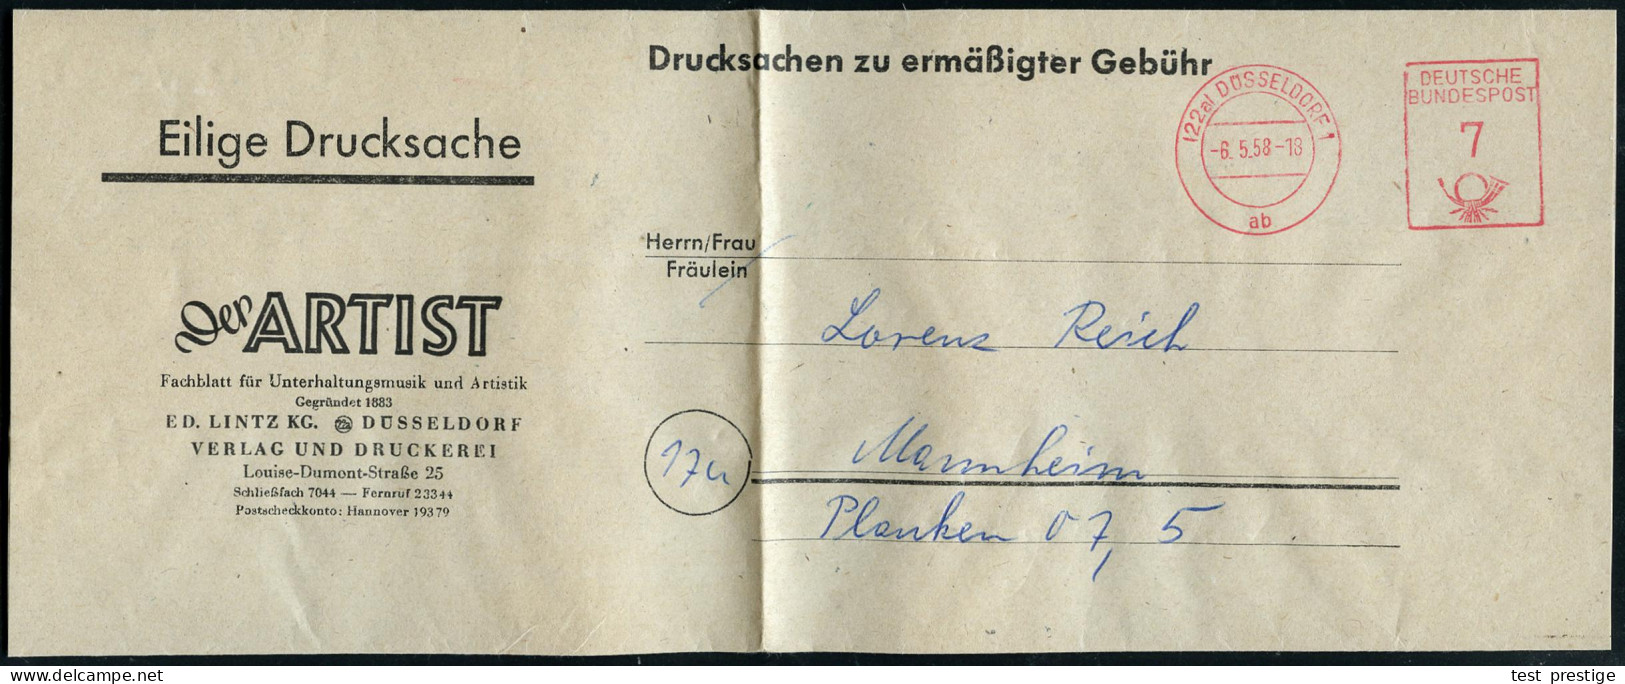 (22a) DÜSSELDORF 1/ Ab/ DEUTSCHE/ BUNDESPOST 1958 (6.5.) PFS 7 Pf. "Posthorn" Auf Zeitungs-Streifband: Der ARTIST, Fachb - Zirkus